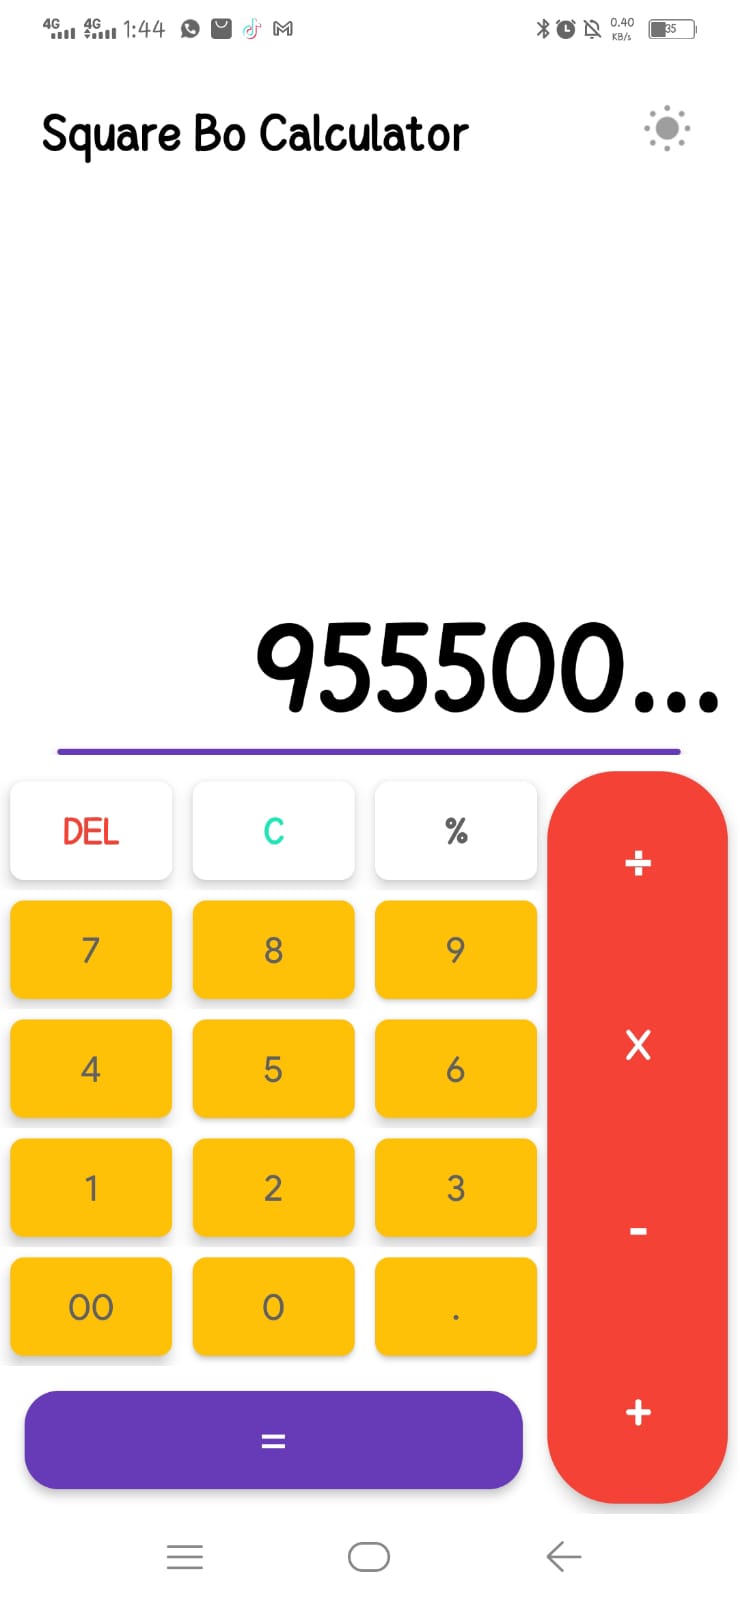 Square Bo Calculator